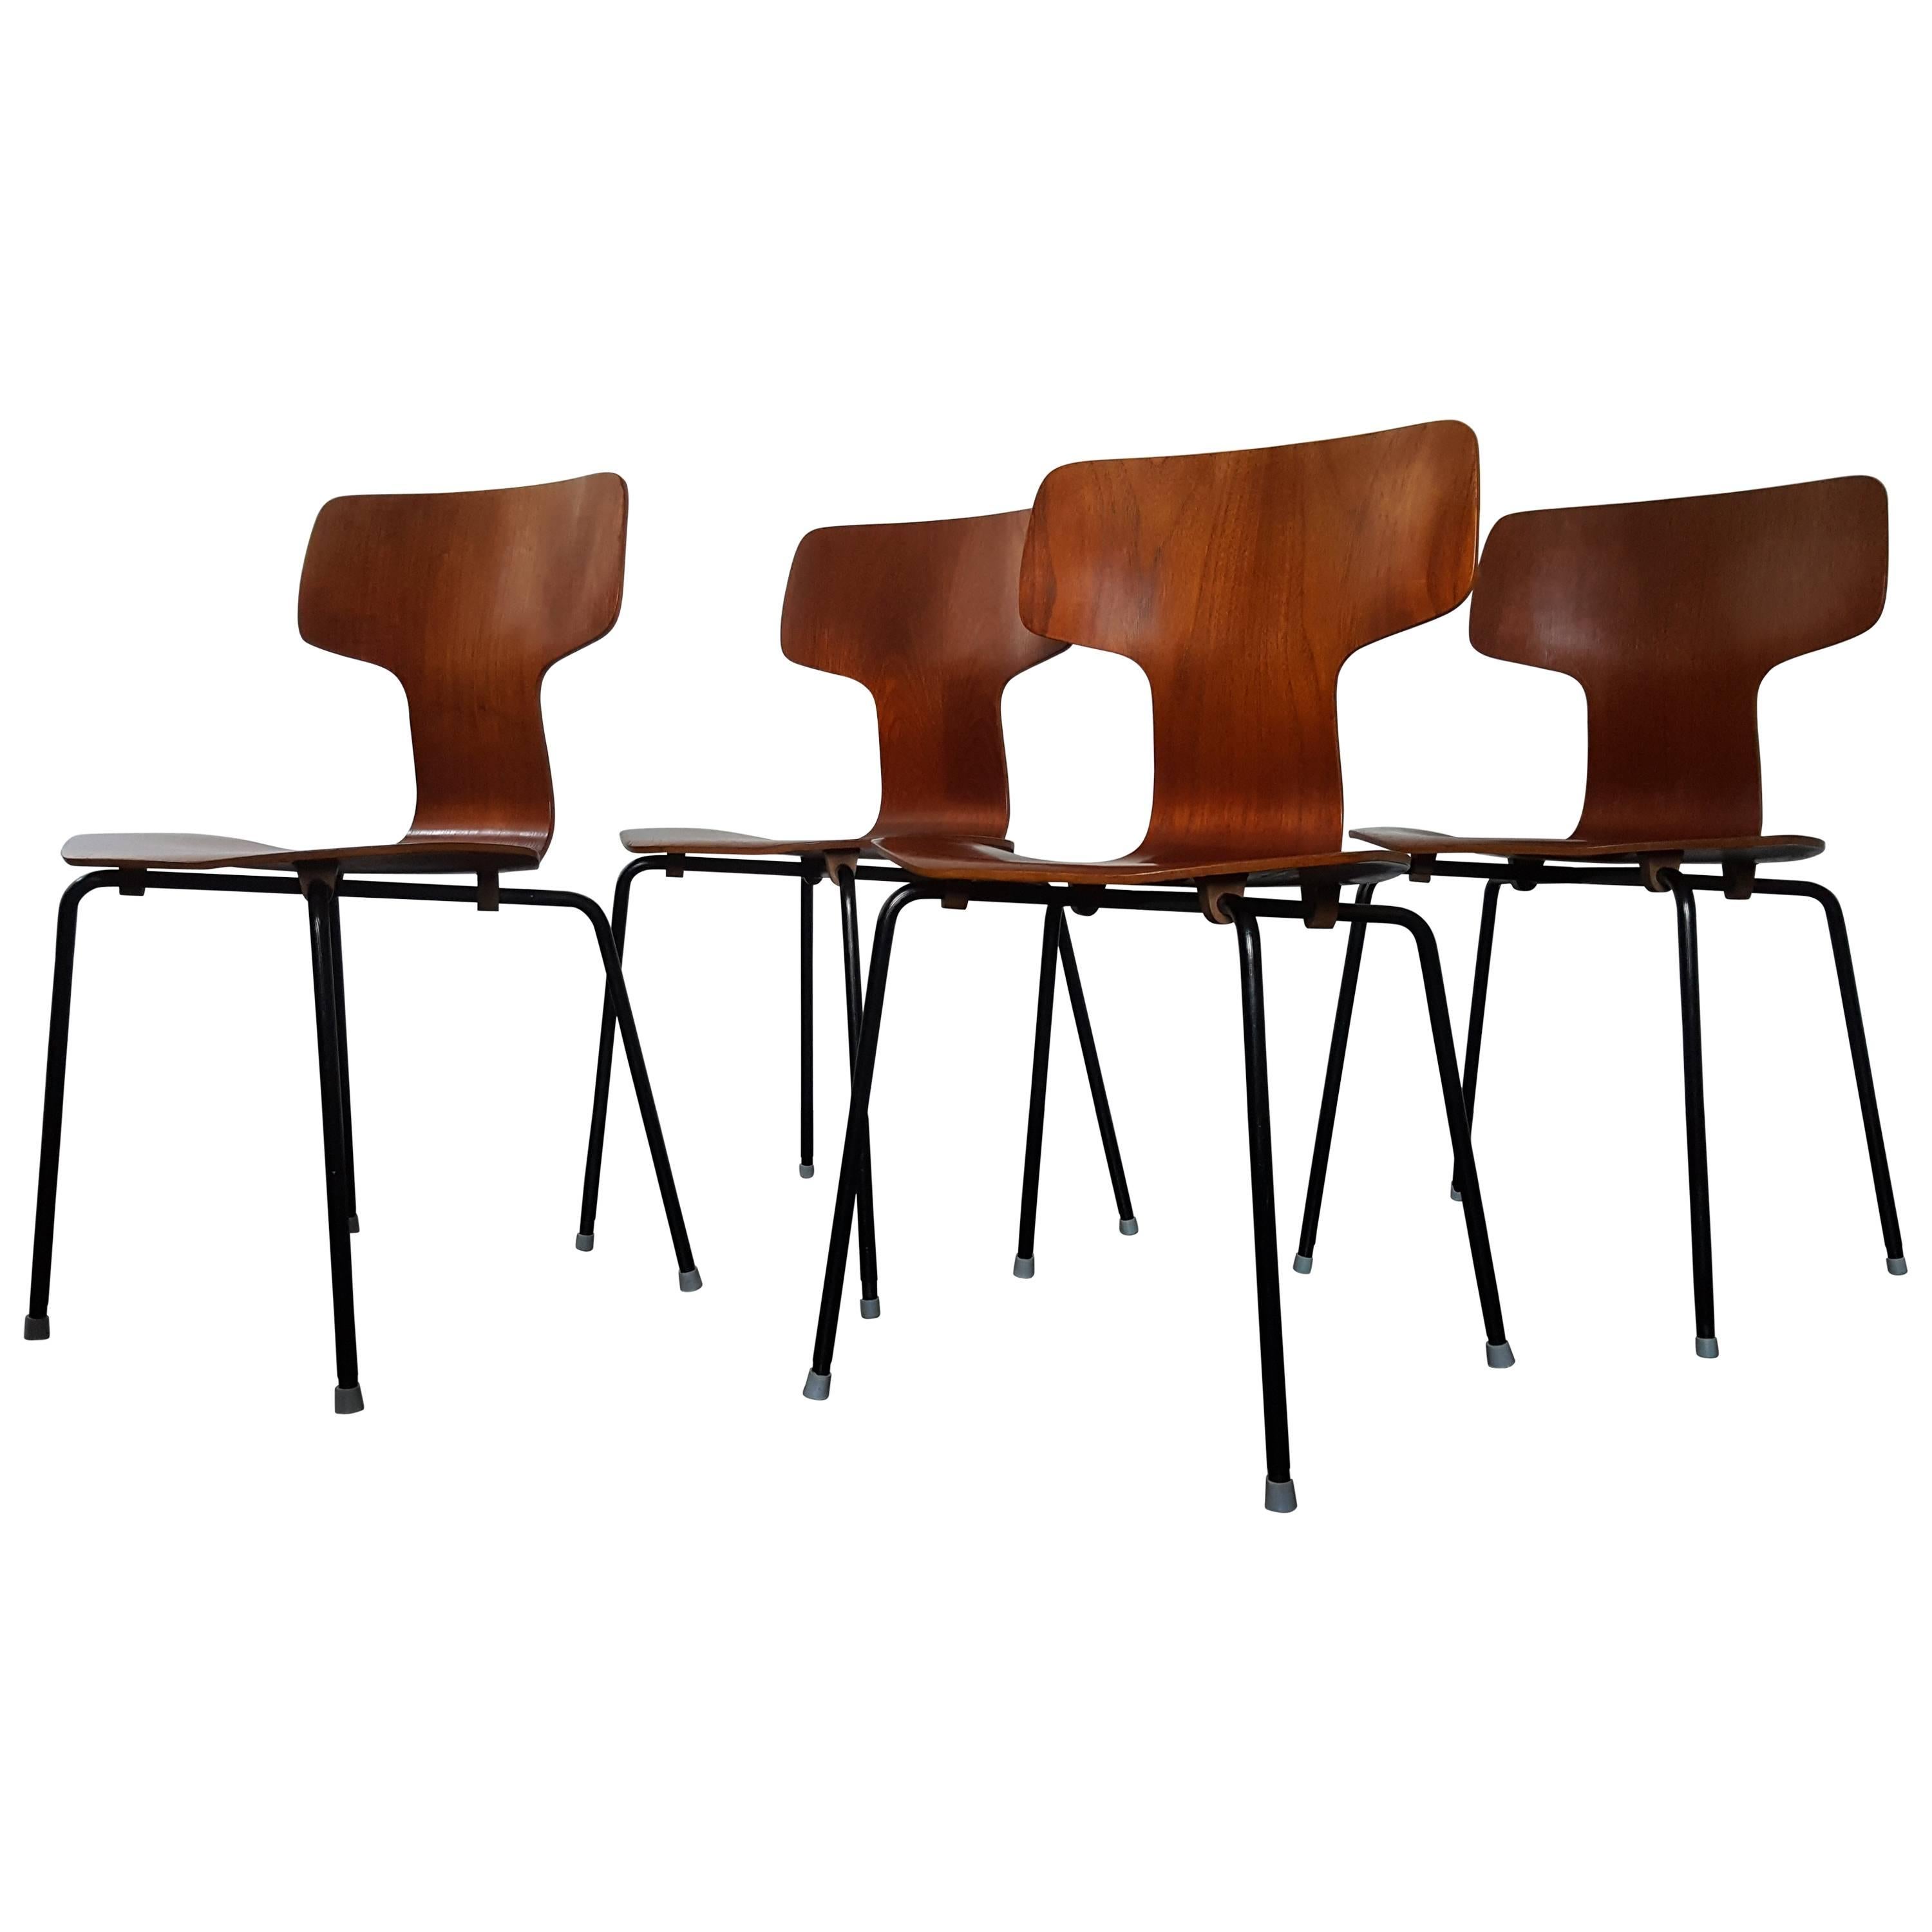 Model 3103 Teak Hammer Chairs by Arne Jacobsen for Fritz Hansen, 1960s